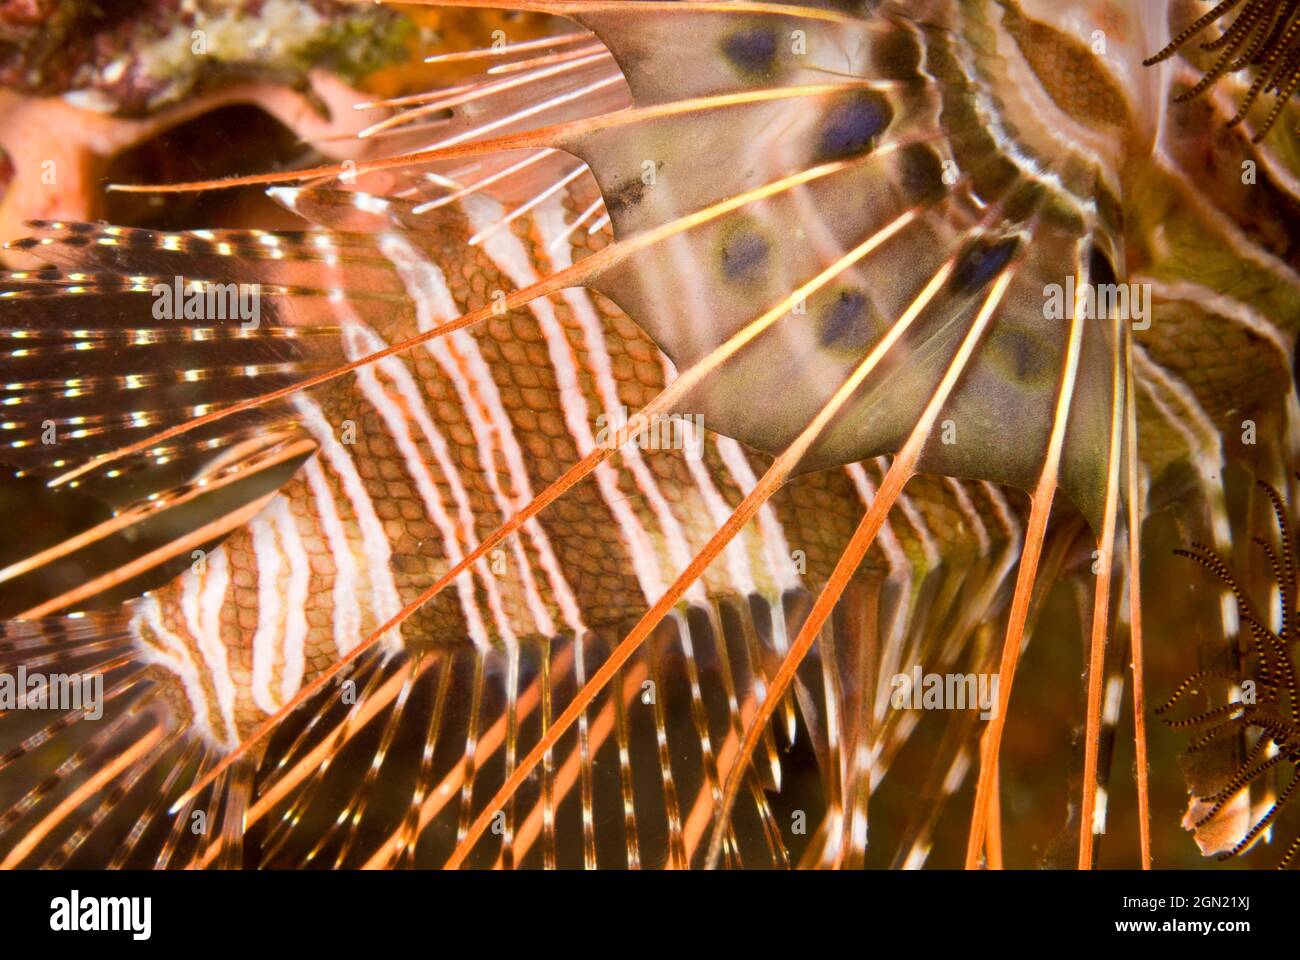 Breitbarred-Glühwürmchen (Pterois antennata), giftige Rückenstacheln, die einen extrem schmerzhaften Stich verursachen können. Der Fisch verwendet seine fächerähnlichen Brustflossen Stockfoto